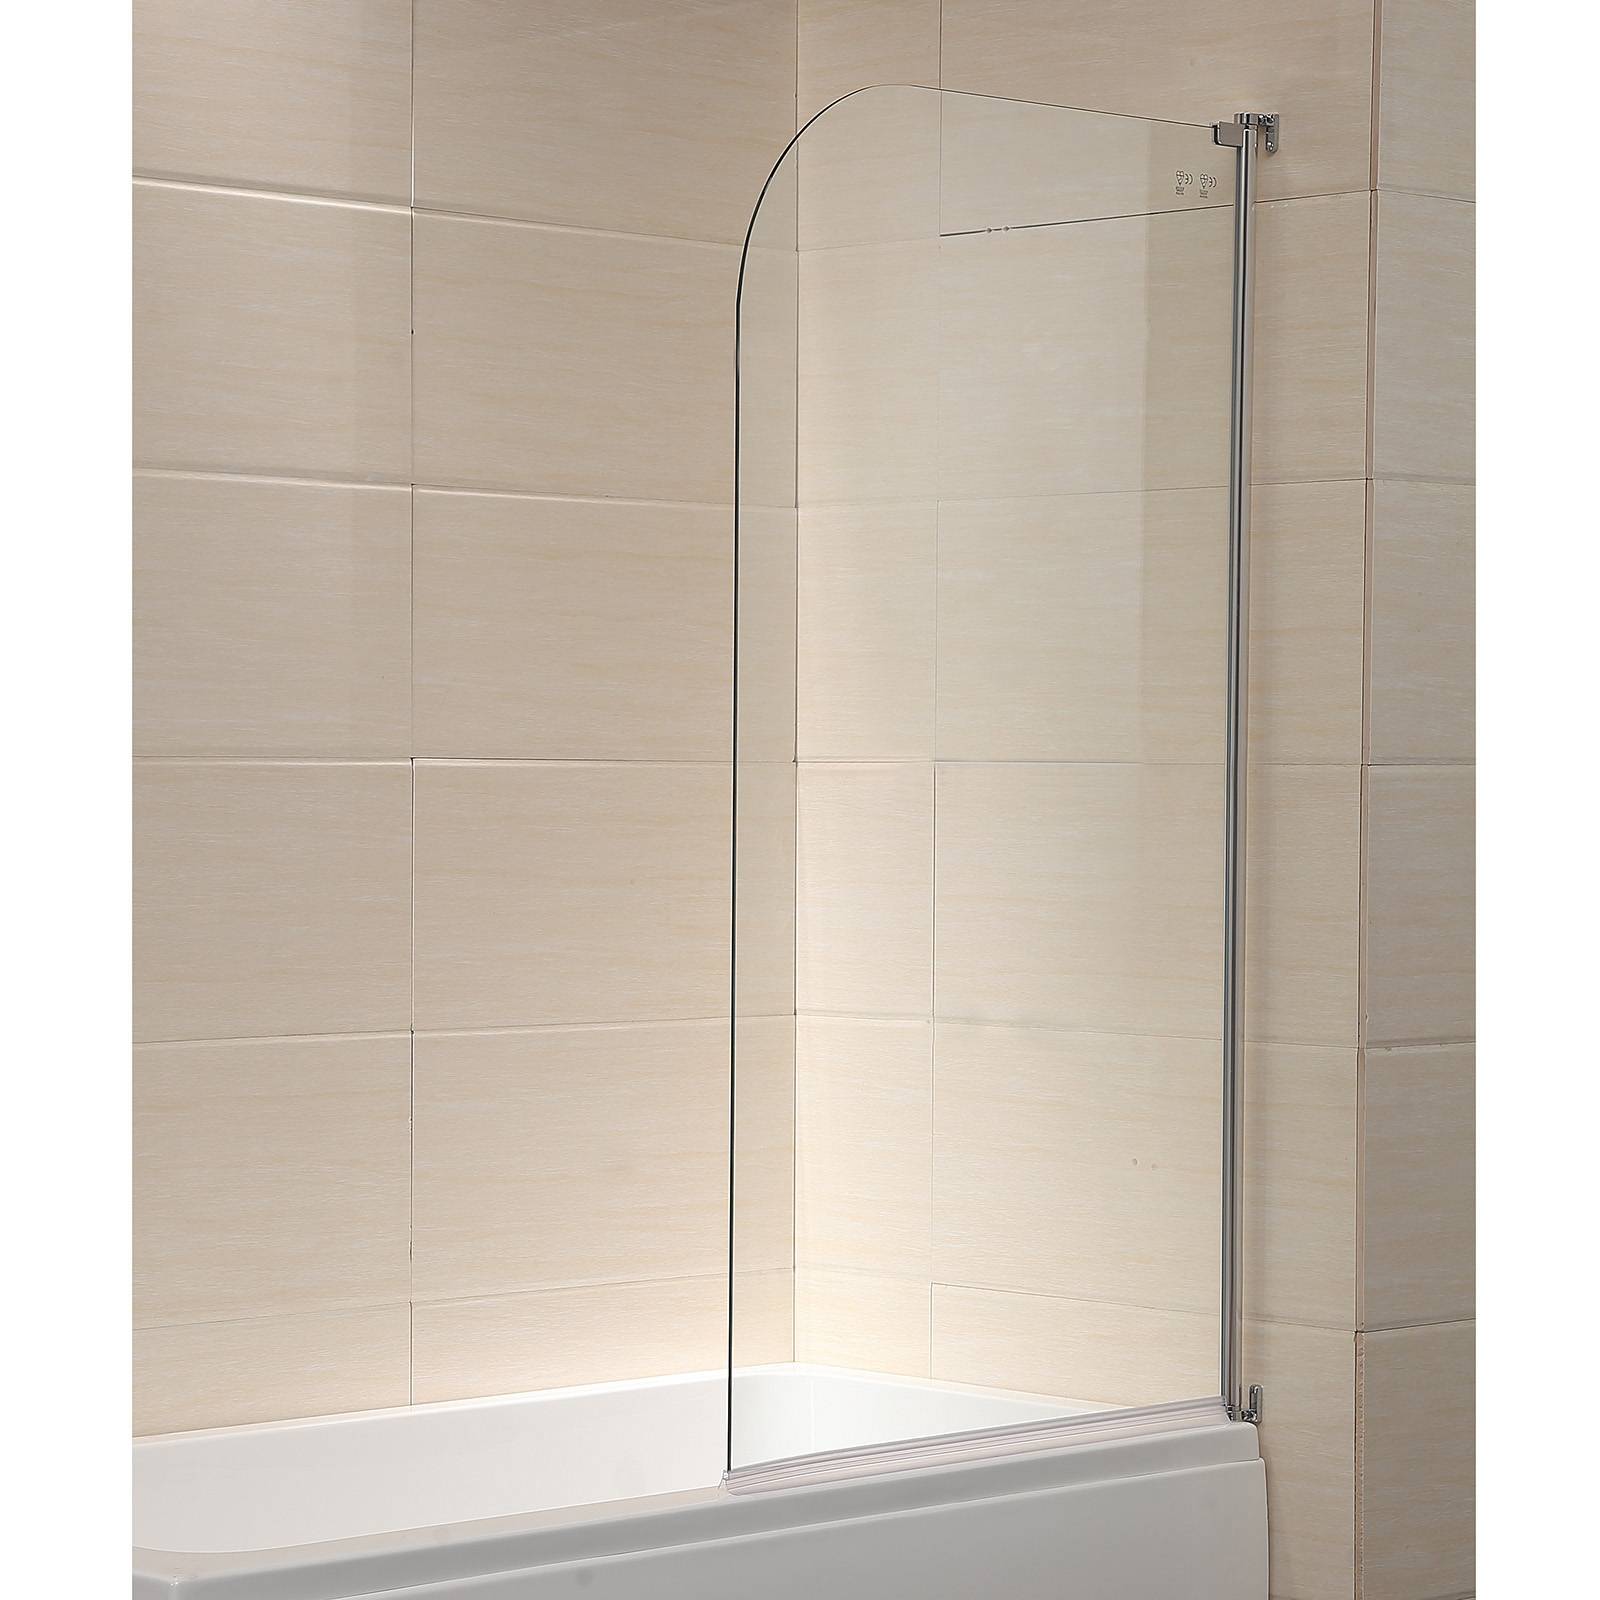 Штора для ванны из стекла: особенности и преимущества, виды стеклянных штор и ограждений и критерии их выбора